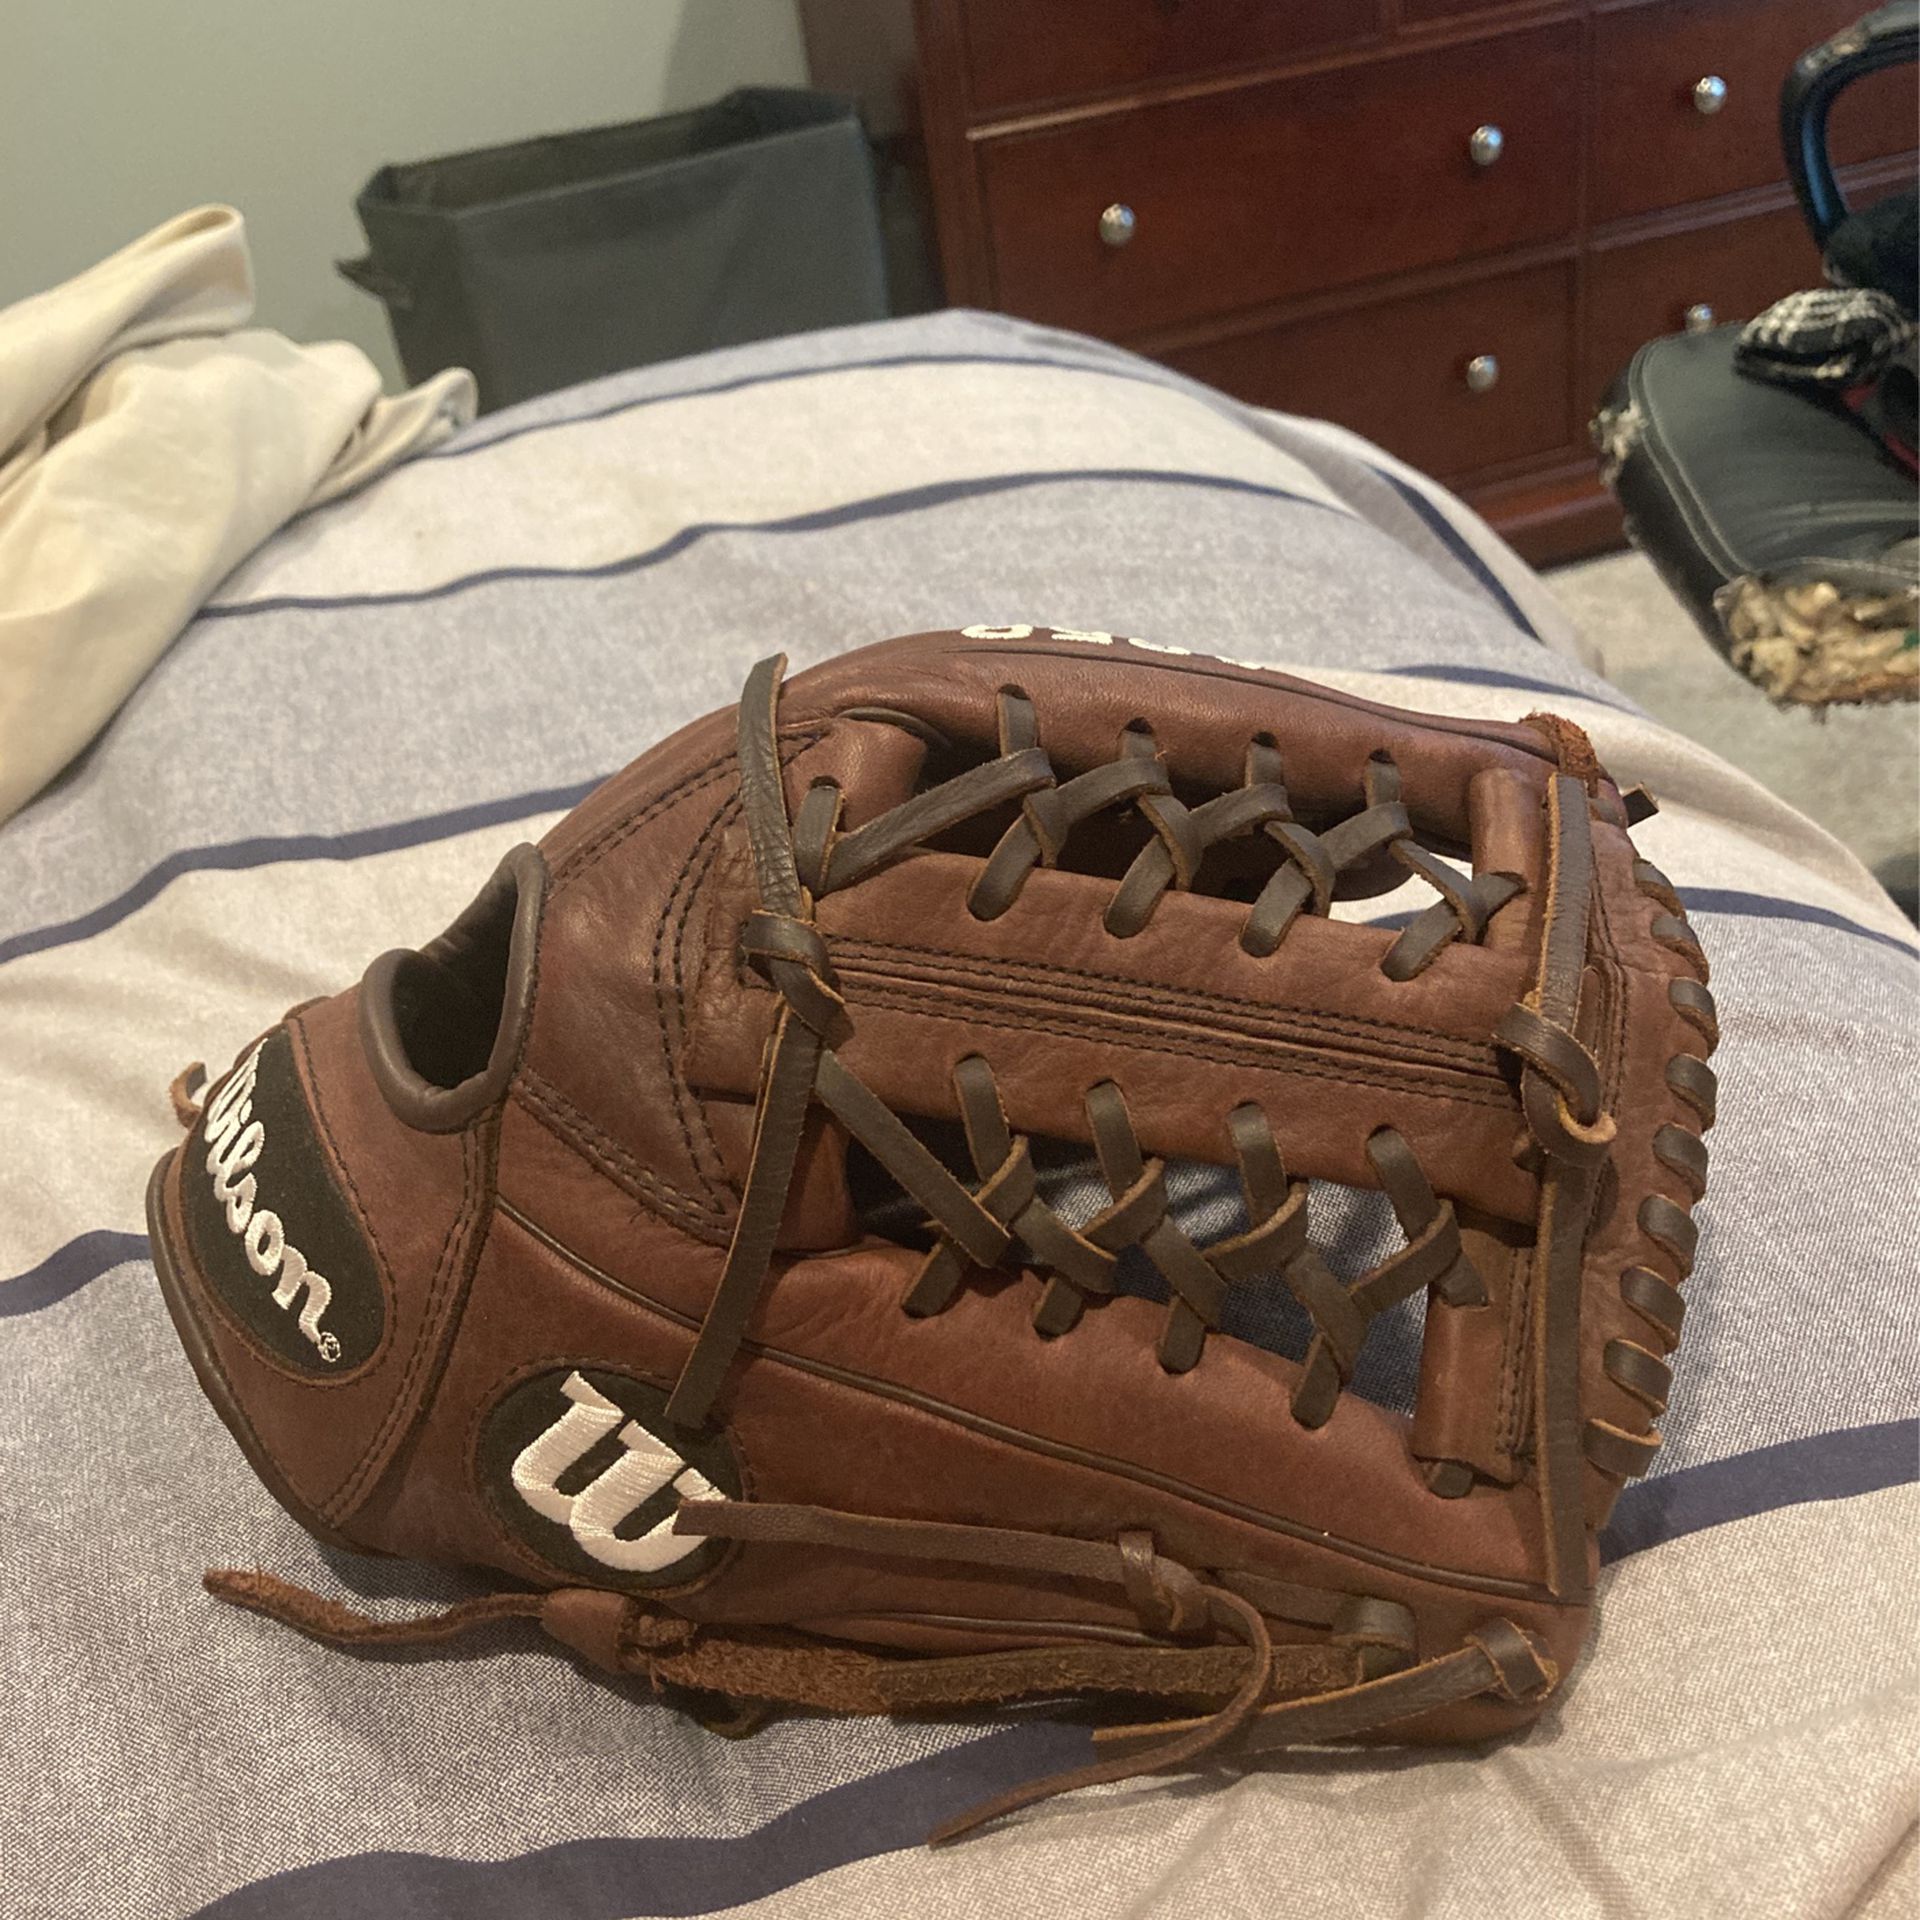 Baseball glove Wilson a950 11.75